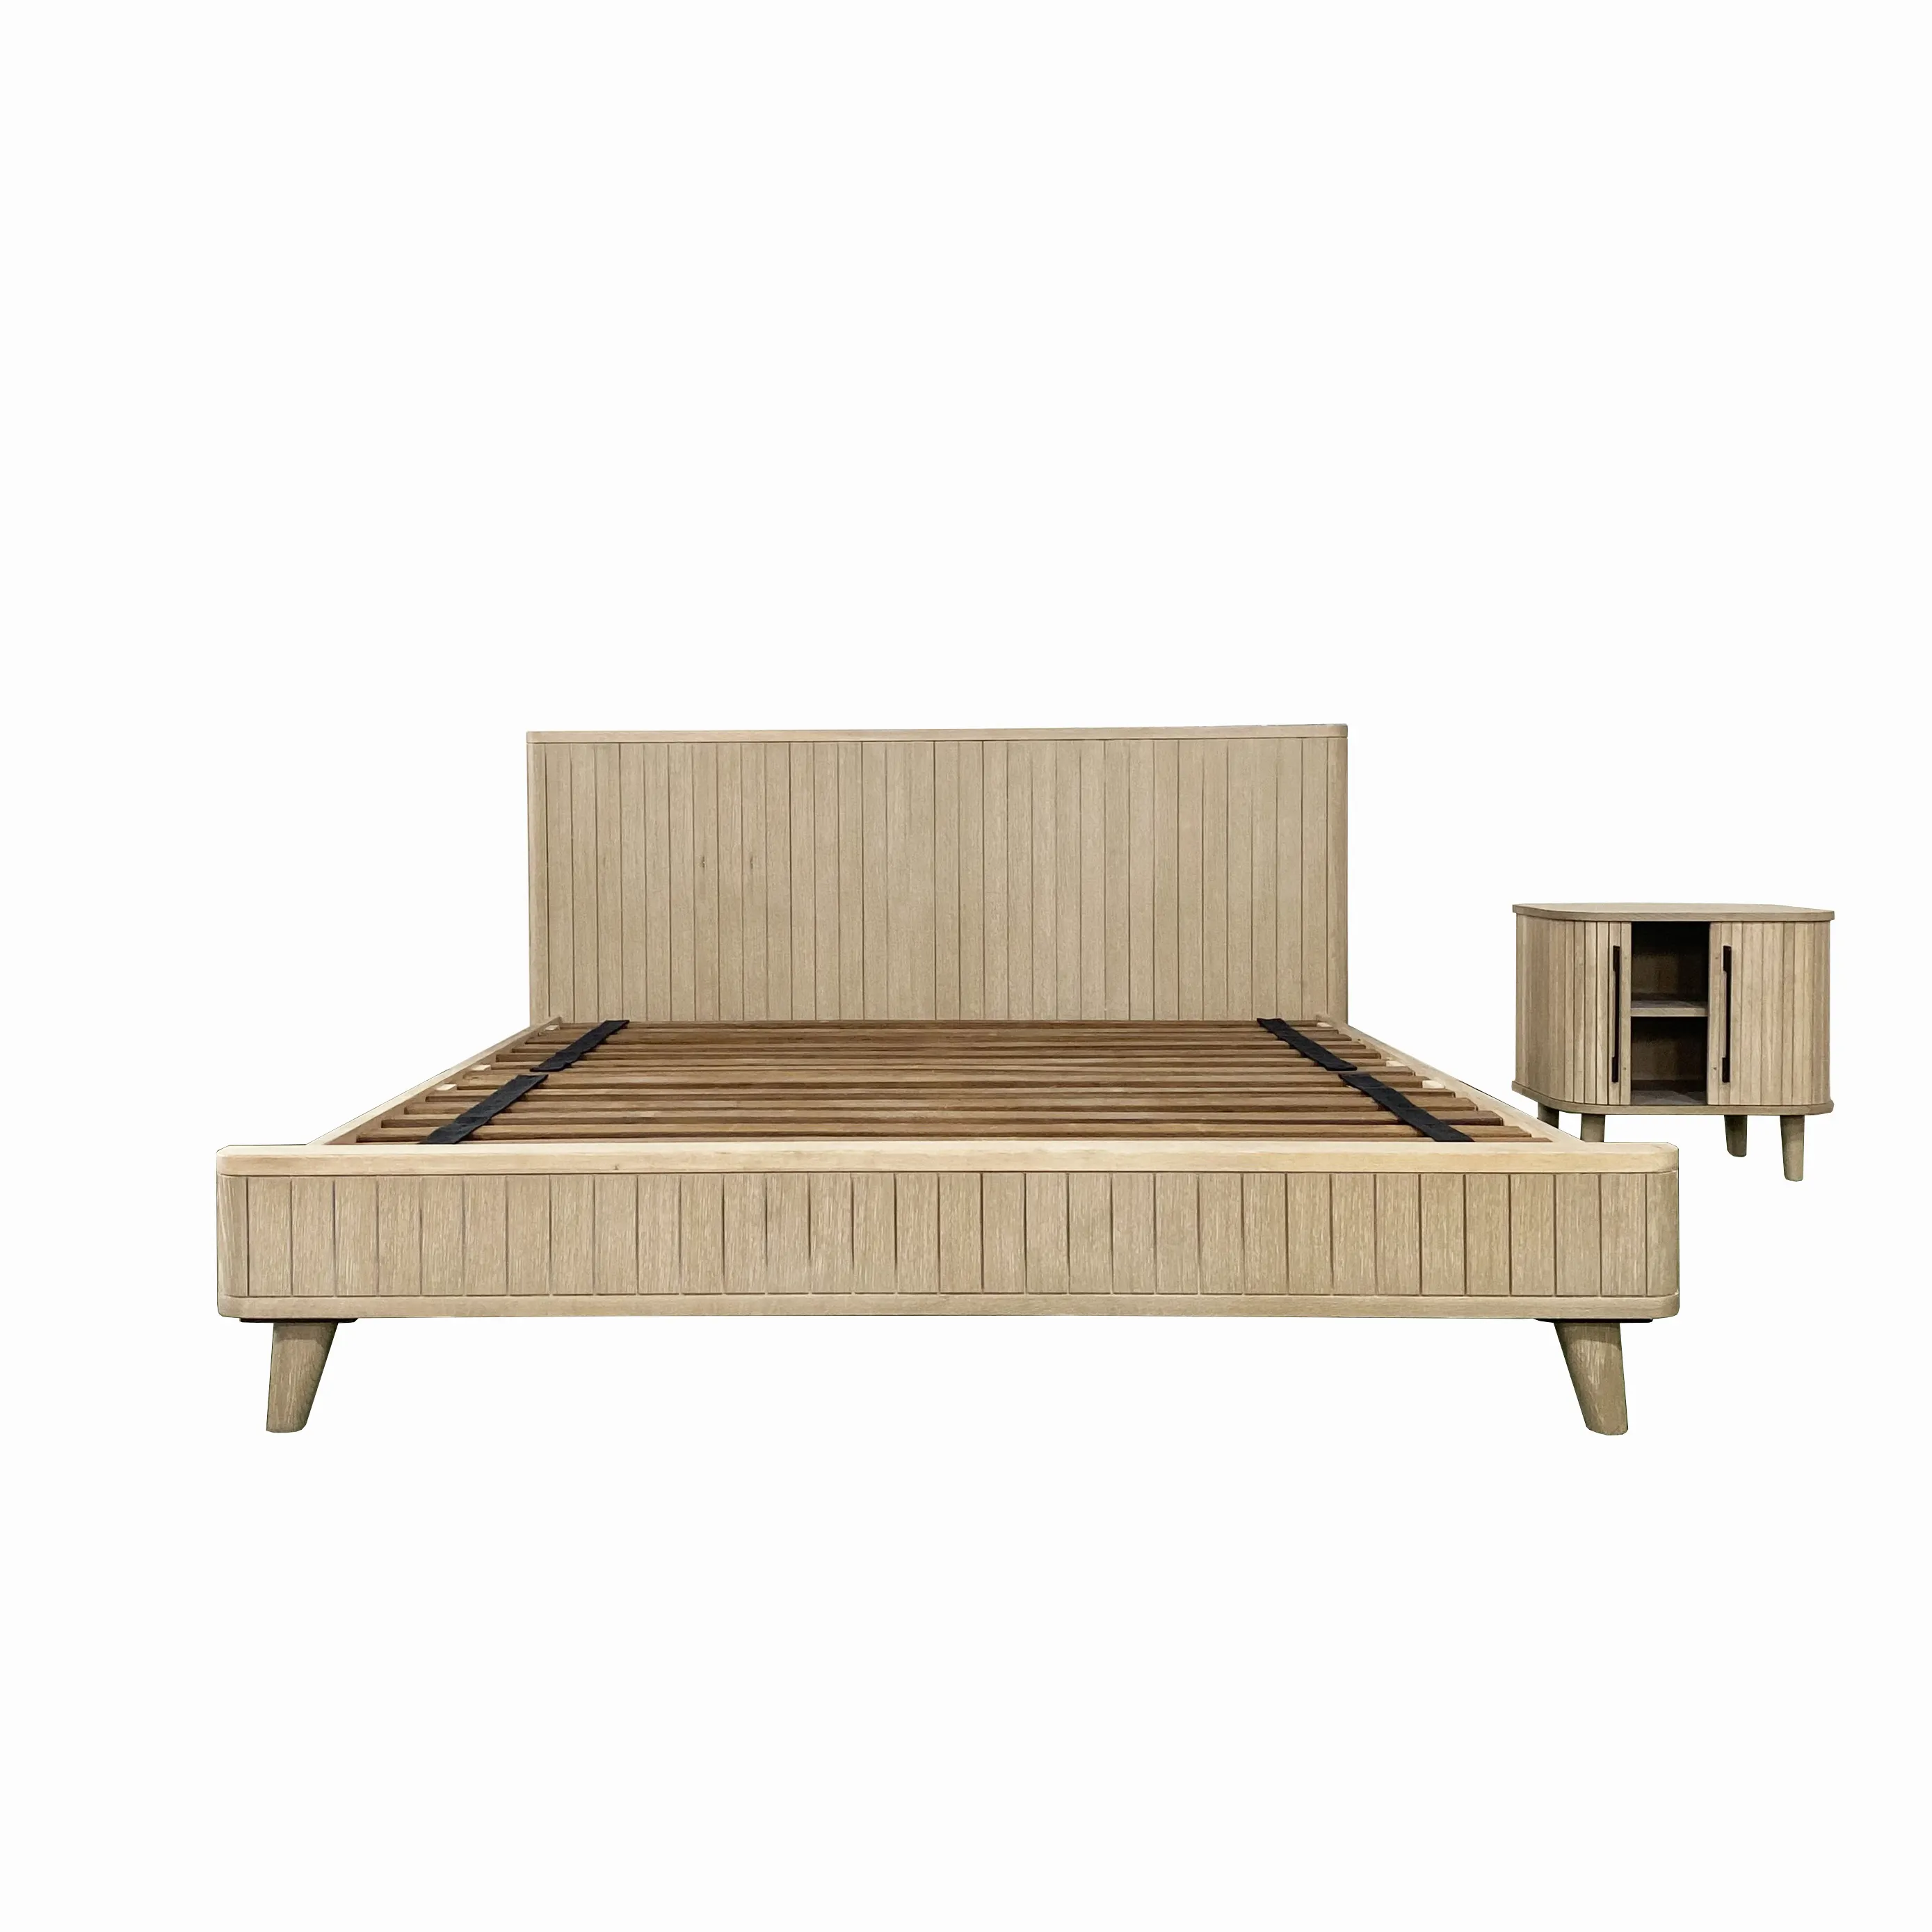 Tempat tidur kayu ek padat kelas atas desain tampelan kayu alami furnitur kamar tidur dapat disesuaikan dari produsen Vietnam